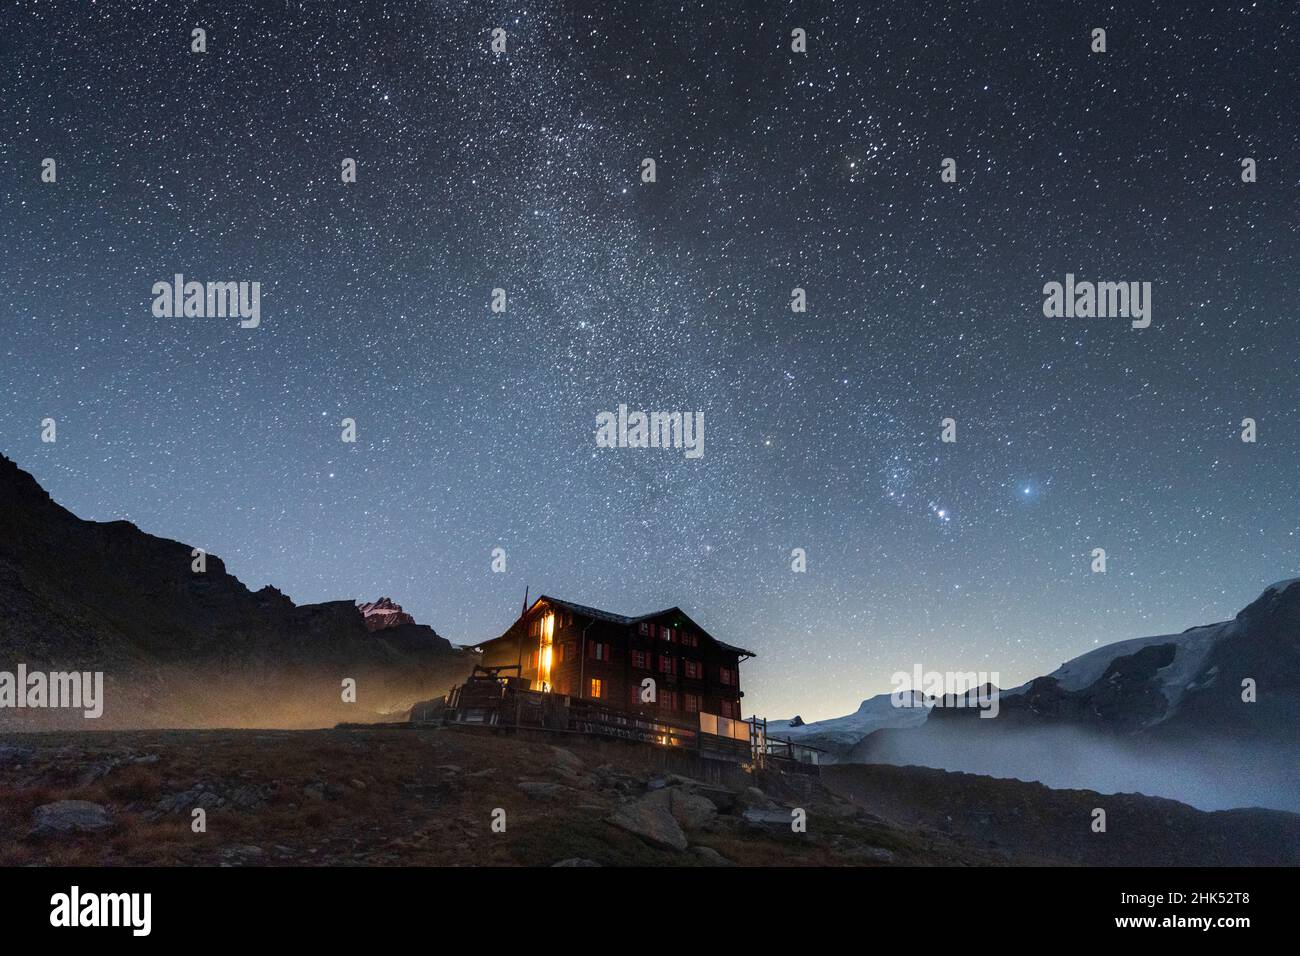 Illuminated mountain hut hotel under the stars, Fluhalp, Zermatt, Valais Canton, Switzerland, Europe Stock Photo